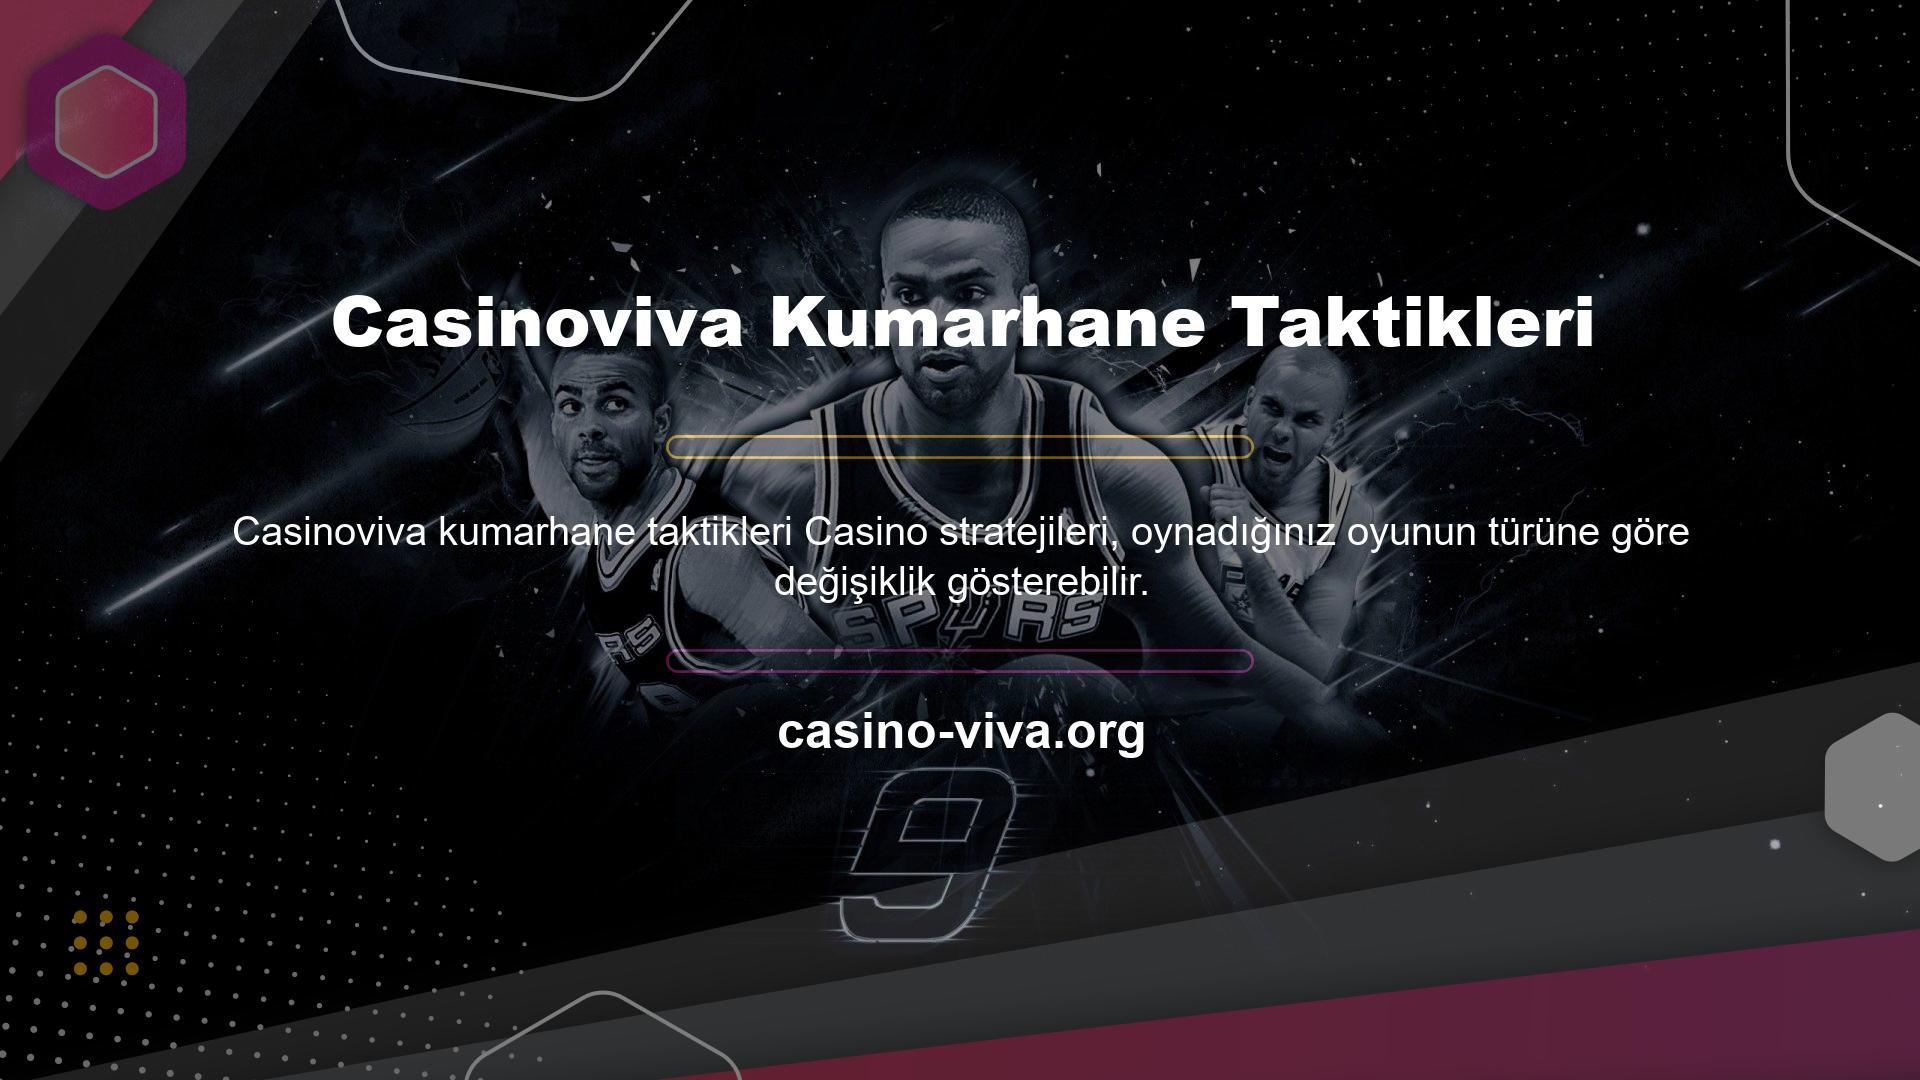 Casinoviva Kumarhane Taktikleri sitesinde online oyun oynamak isteyenler aşağıdaki taktiksel seçenekleri kullanabilirler